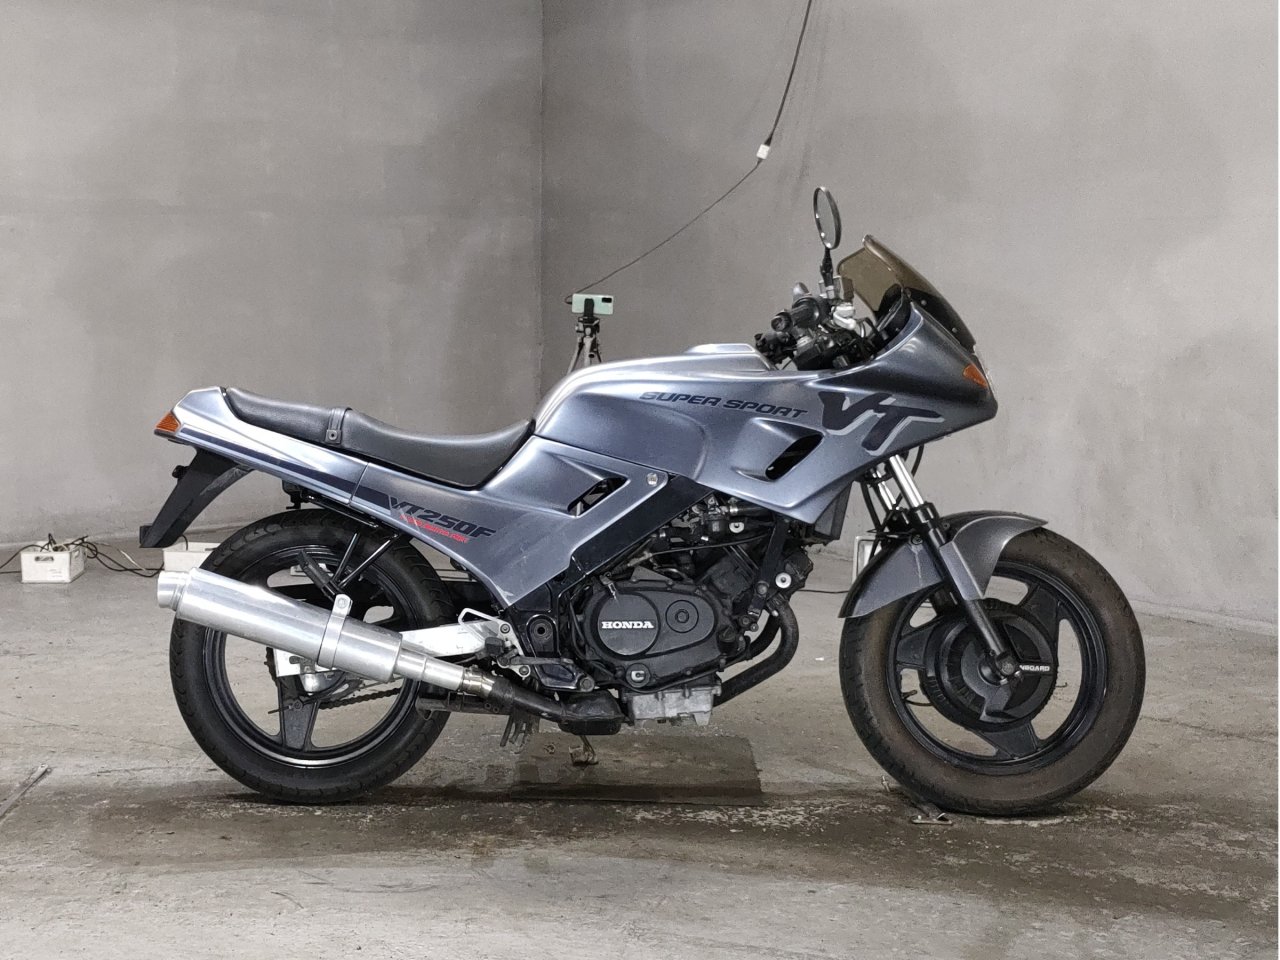 Honda VT250F - Adamoto - Motorcycles from Japan